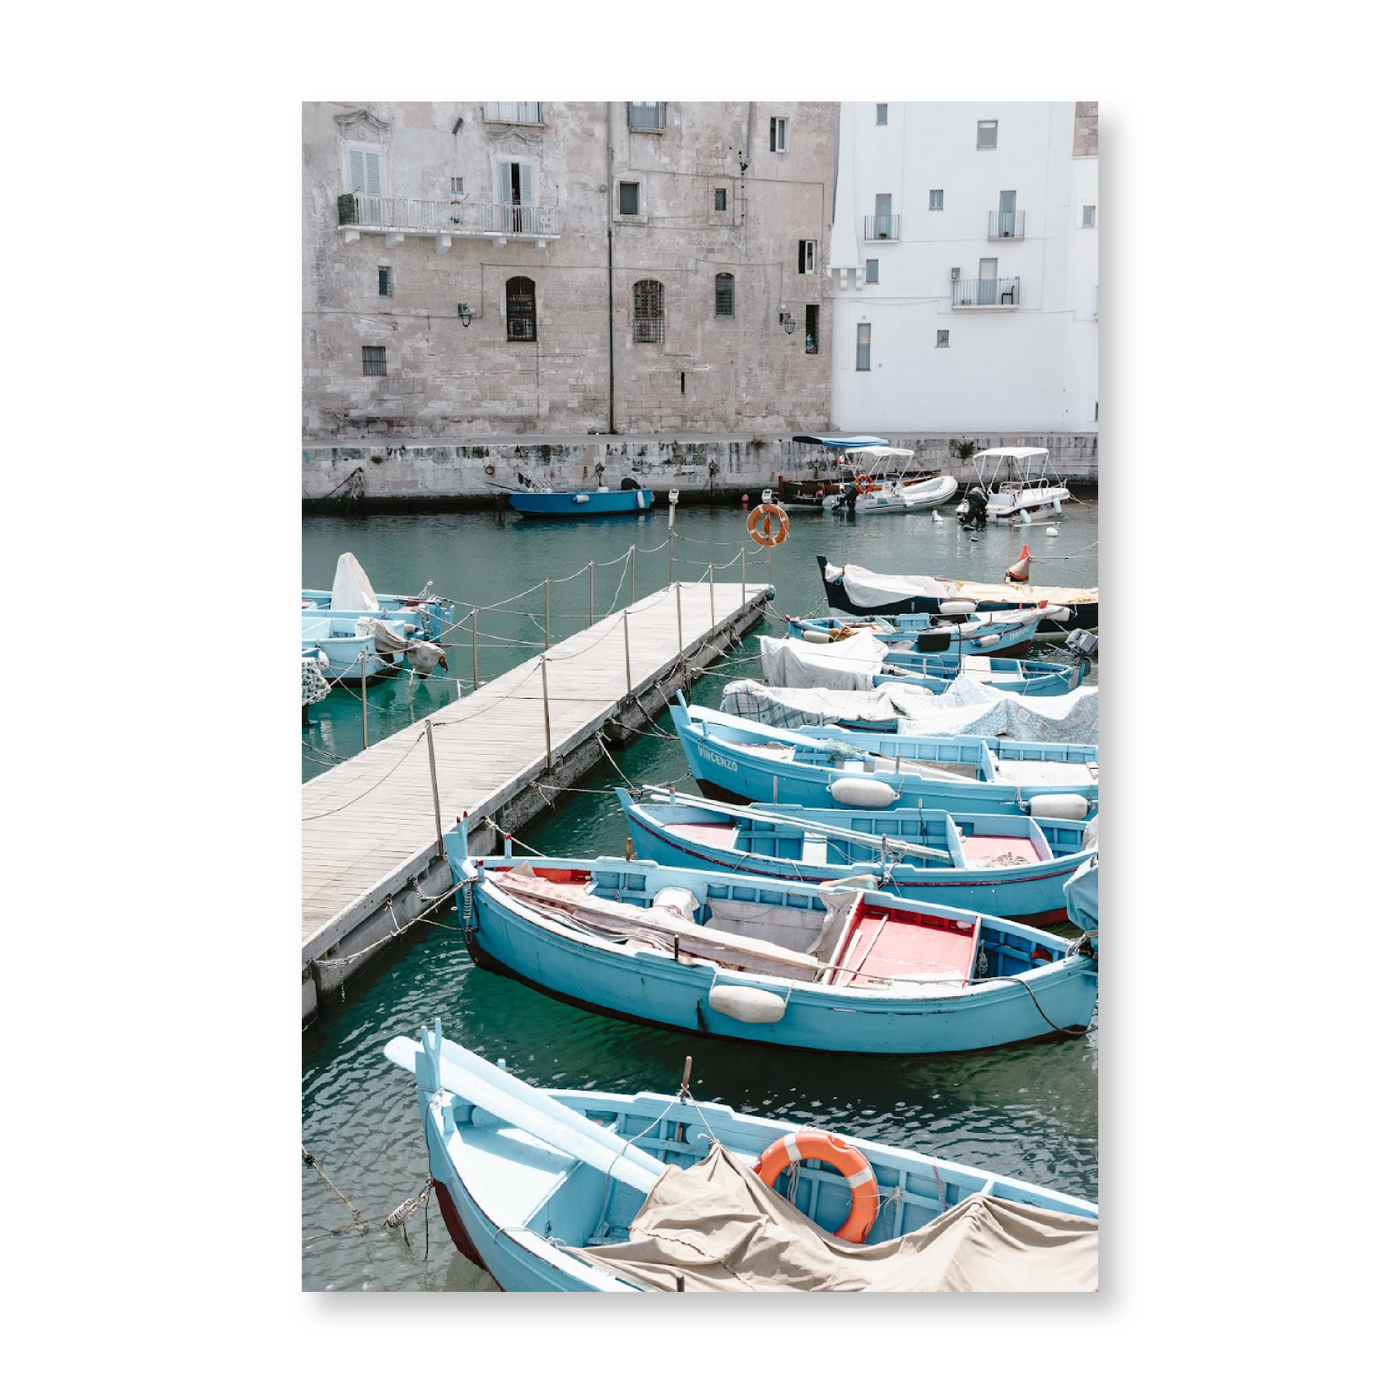 Boats In A Port in Puglia